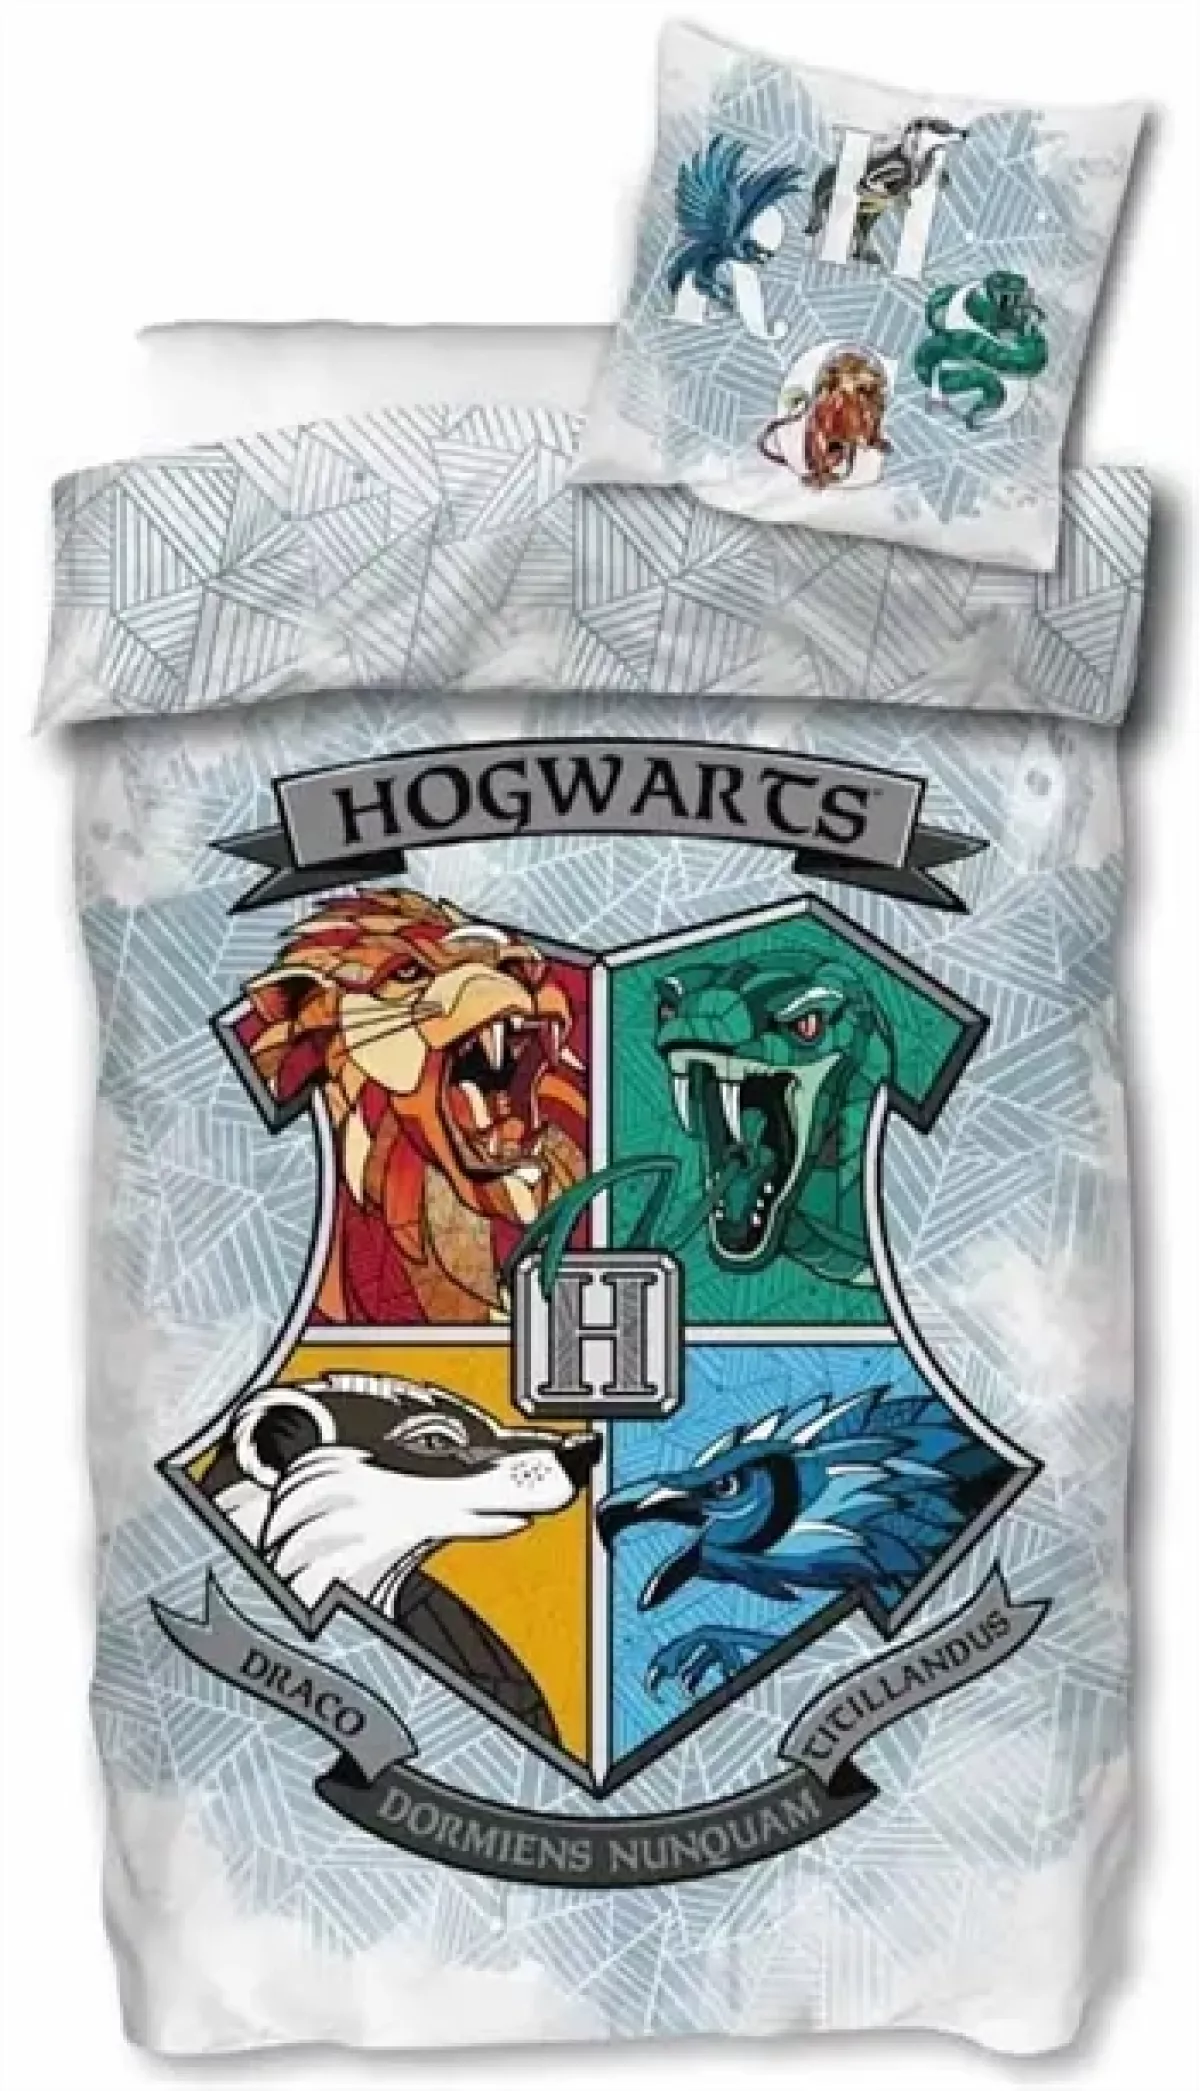 #3 - Harry Potter sengetøj - 140x200 cm - Sengesæt med logo af Hogwarts - 2 i 1 -  Dynebetræk i 100% bomuld